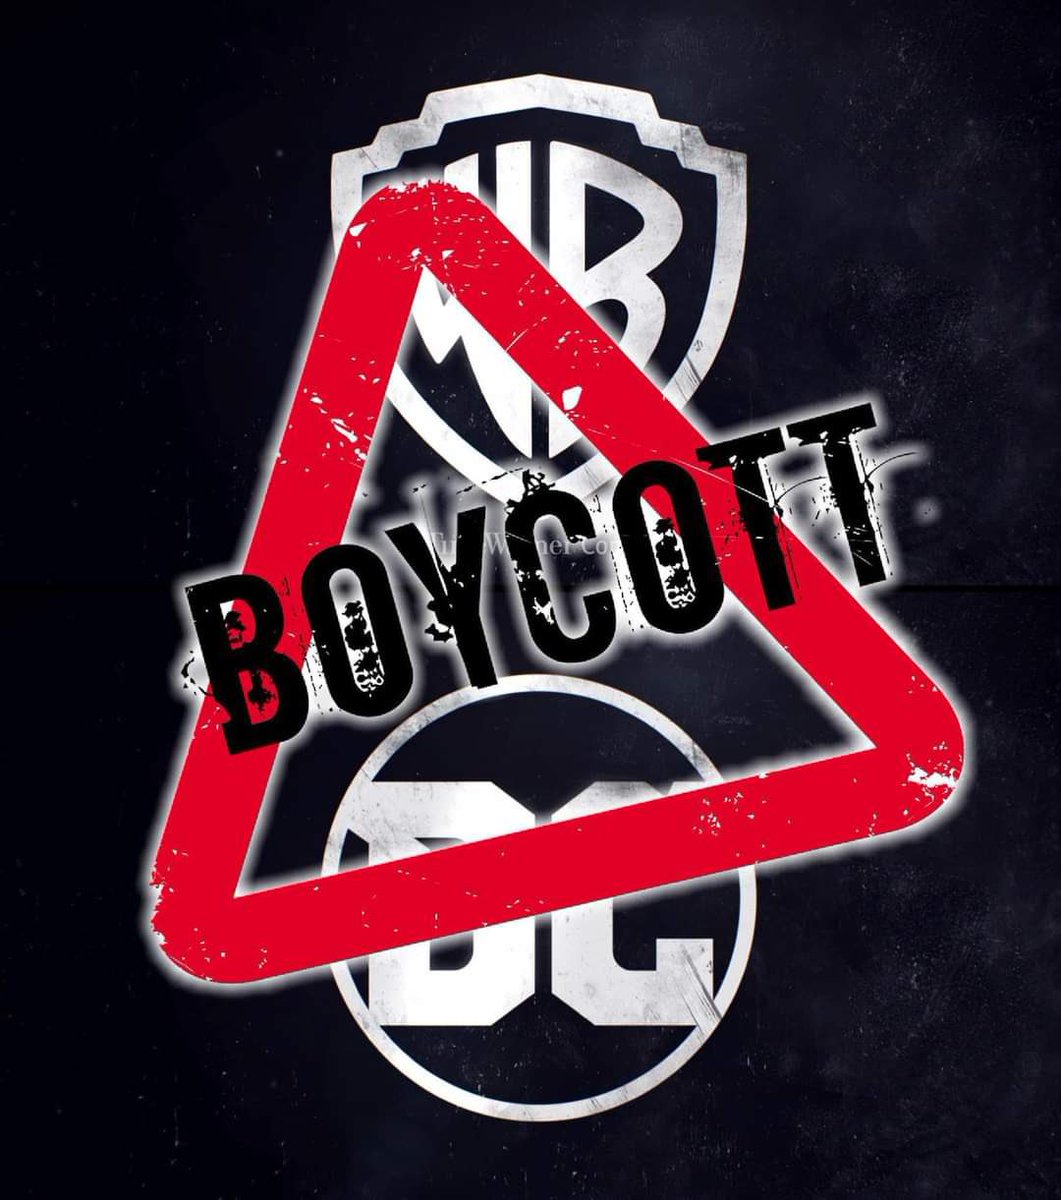 Who boycotting the Flash movie with me!!!!
#BoycottWBD
#BoycottTheFlash